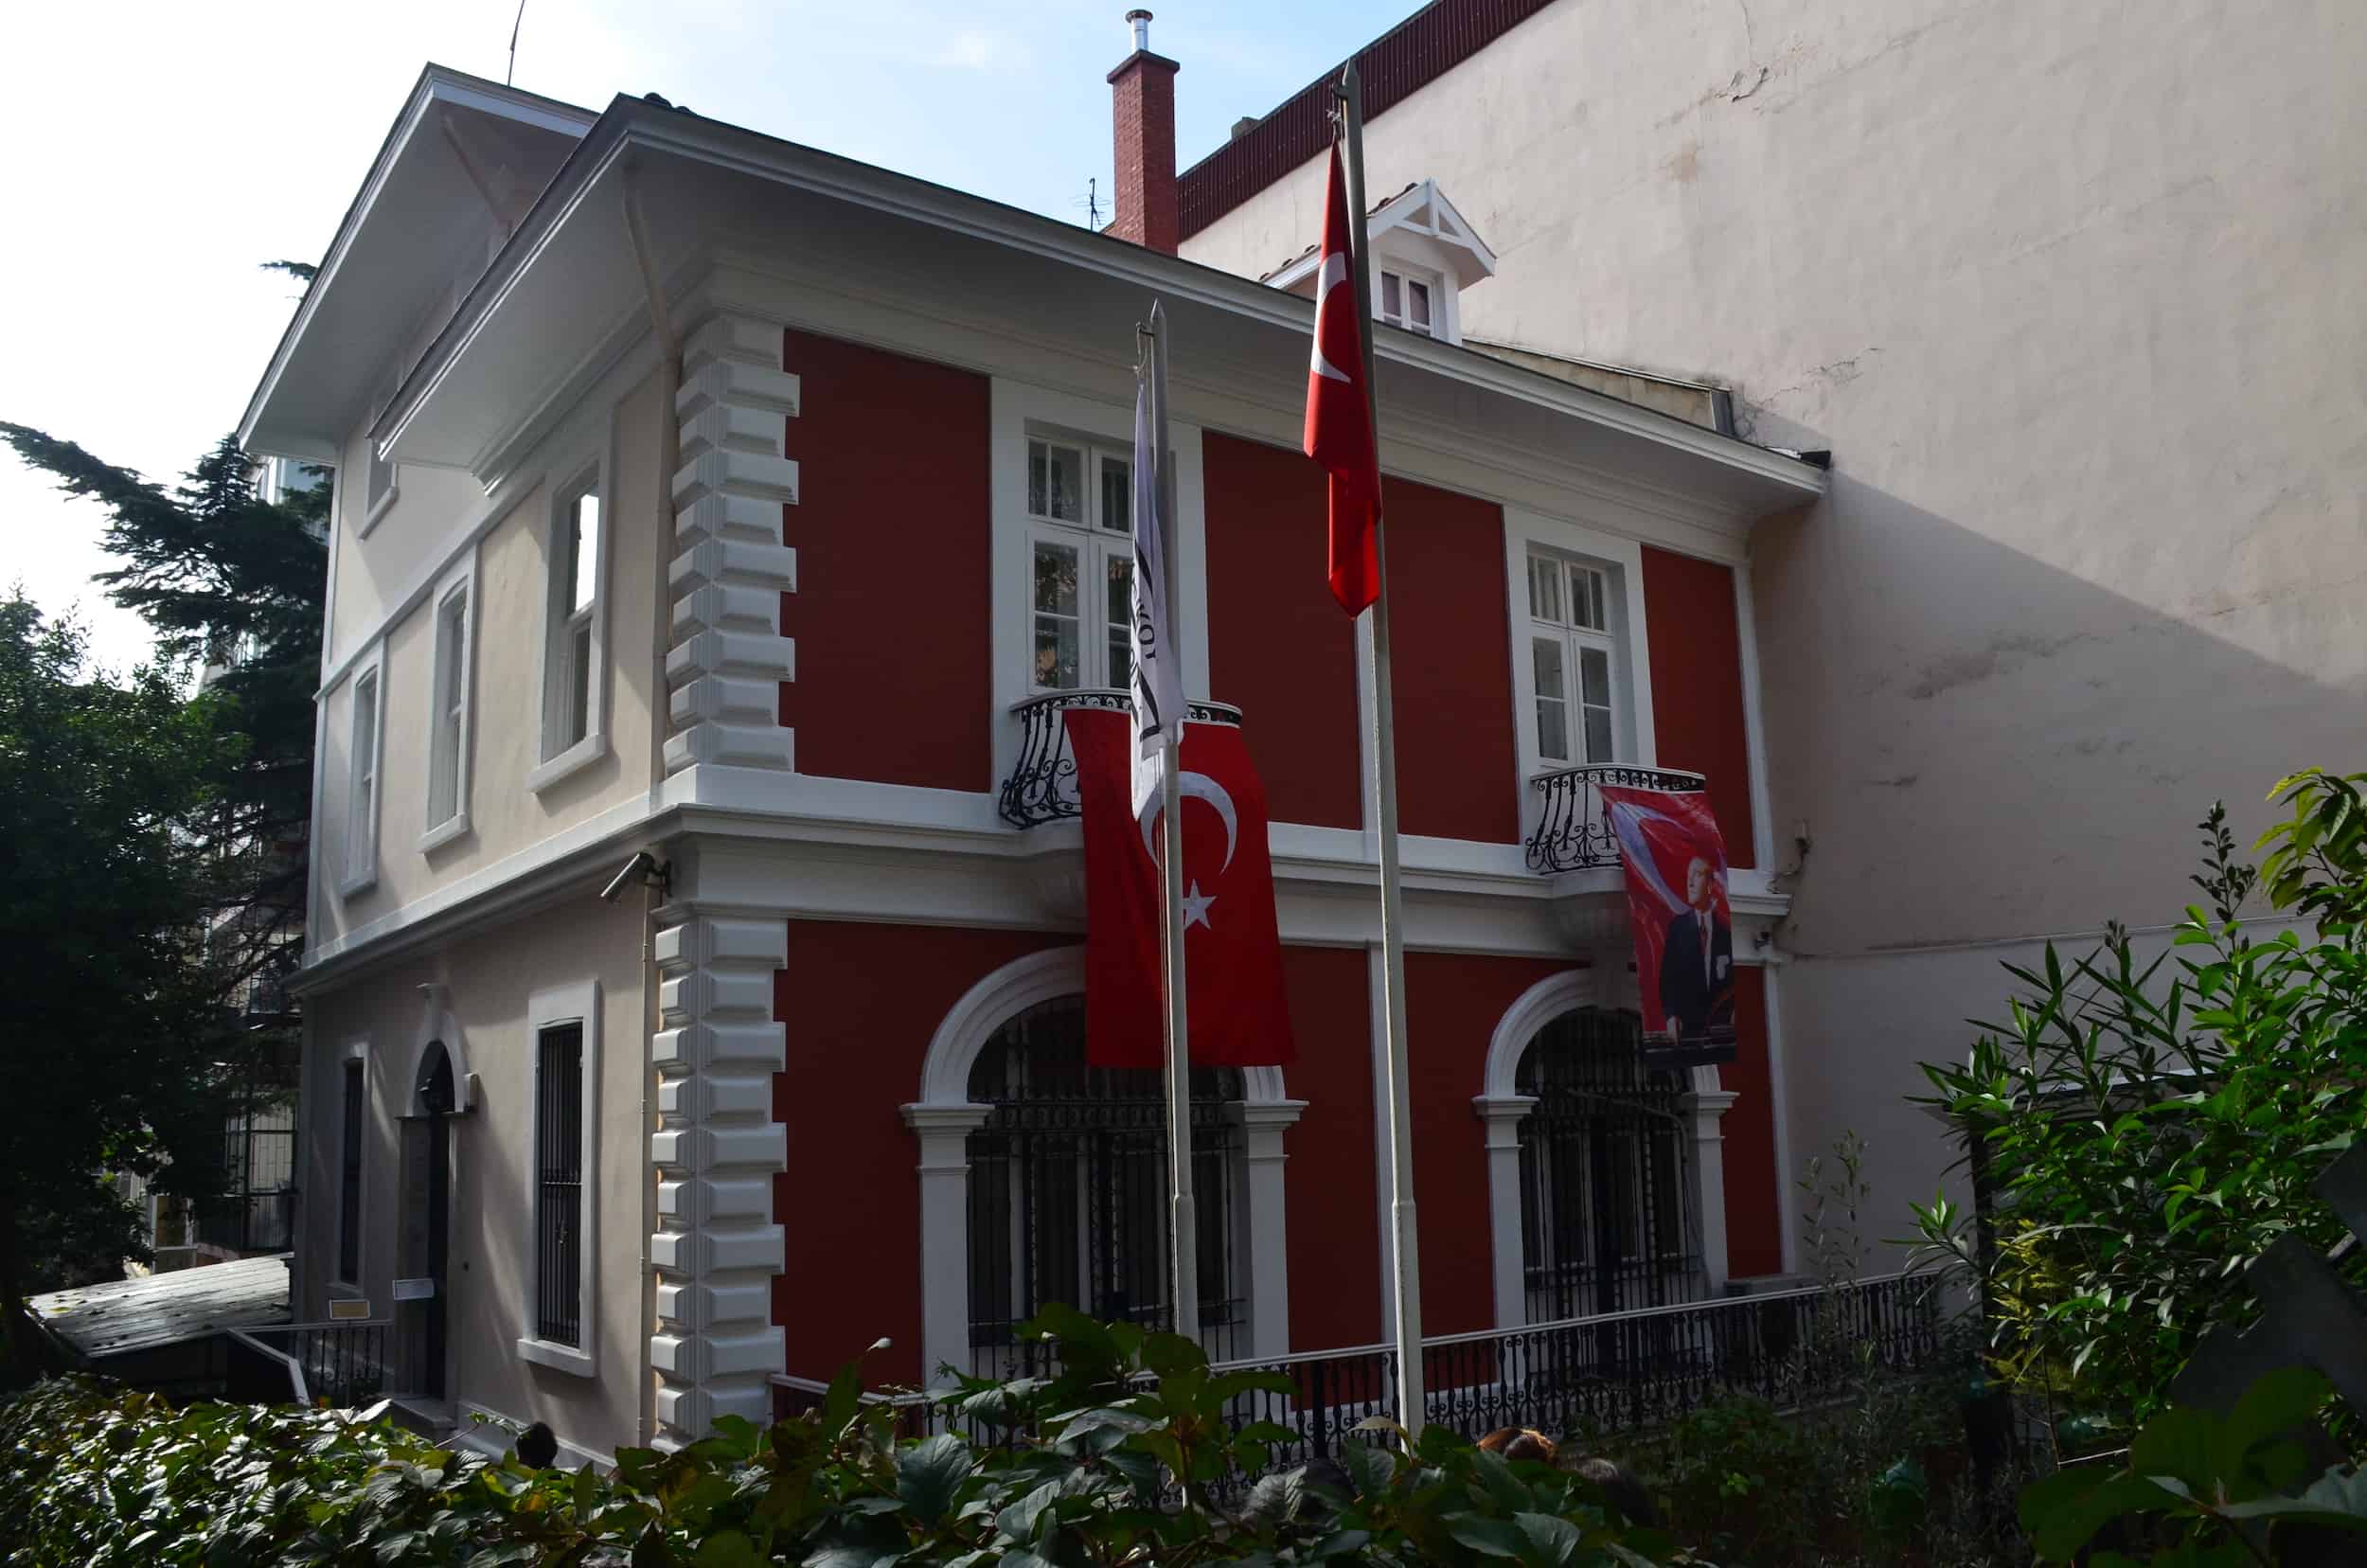 Barış Manço Museum in Istanbul, Turkey